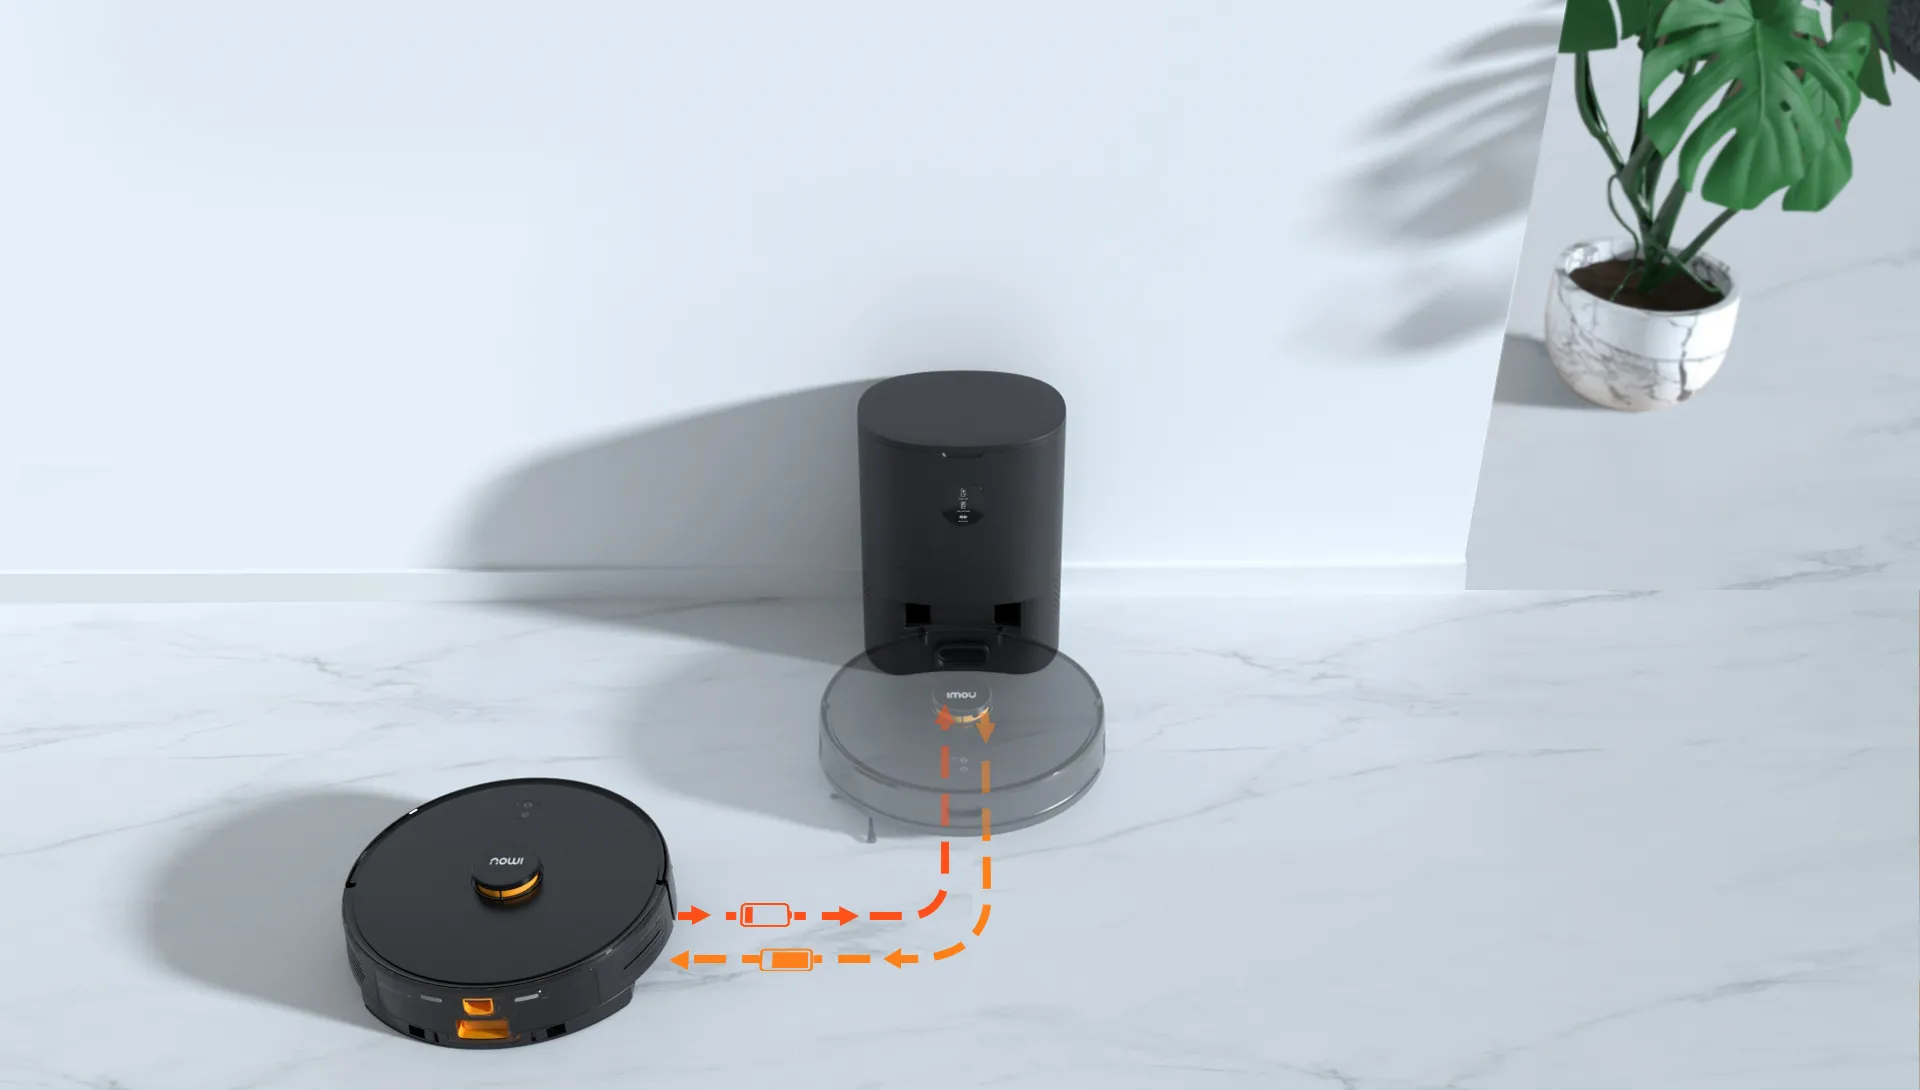 imou 로봇청소기가 자동으로 복귀해 충전되는 사진